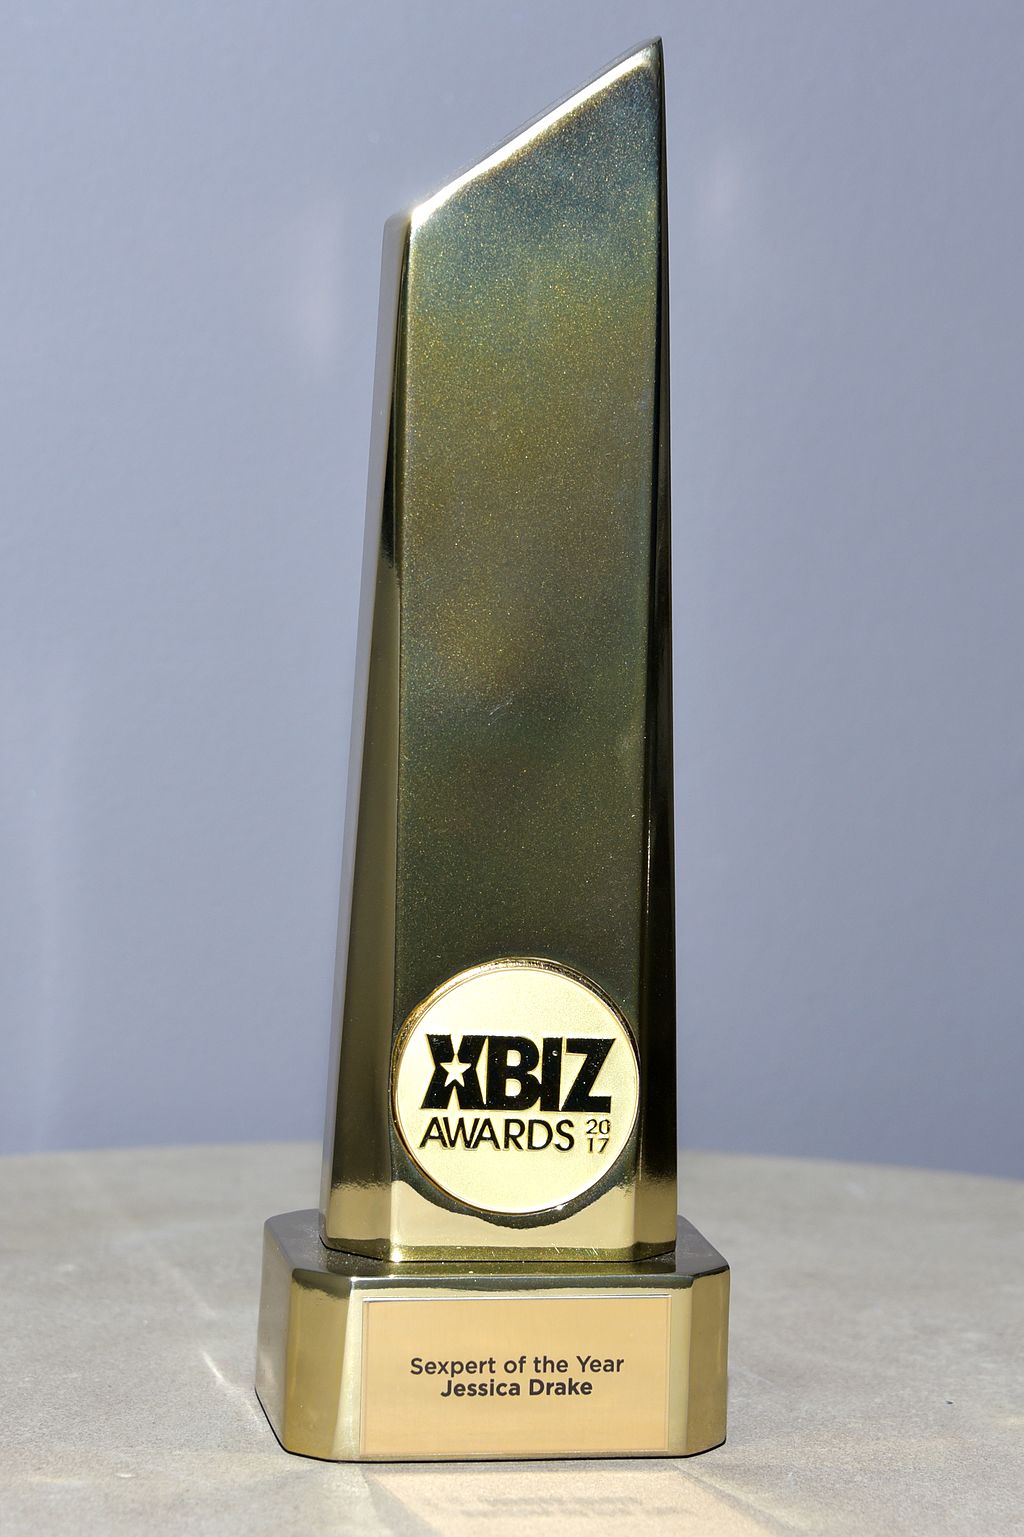 XBIZ Awards pic pic